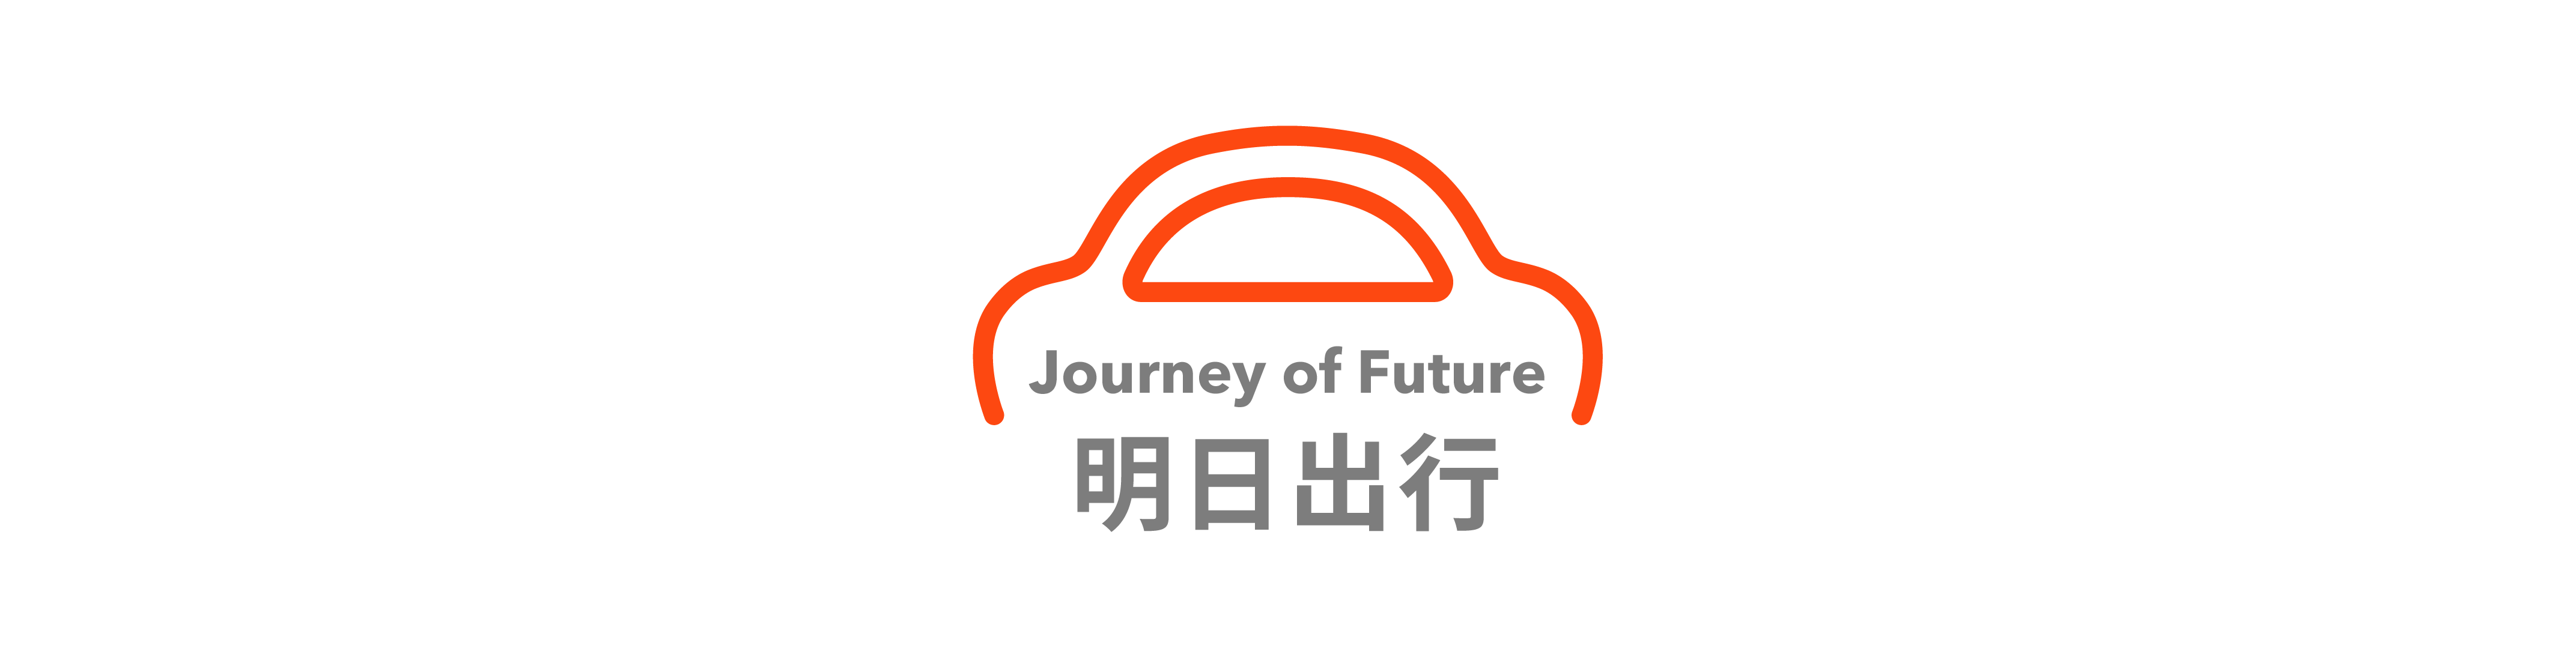 44 - Xiaomi Snow Test Exposure / FF ha firmato un accordo strategico con la città di Huanggang / Debutto della Corvette E-Ray